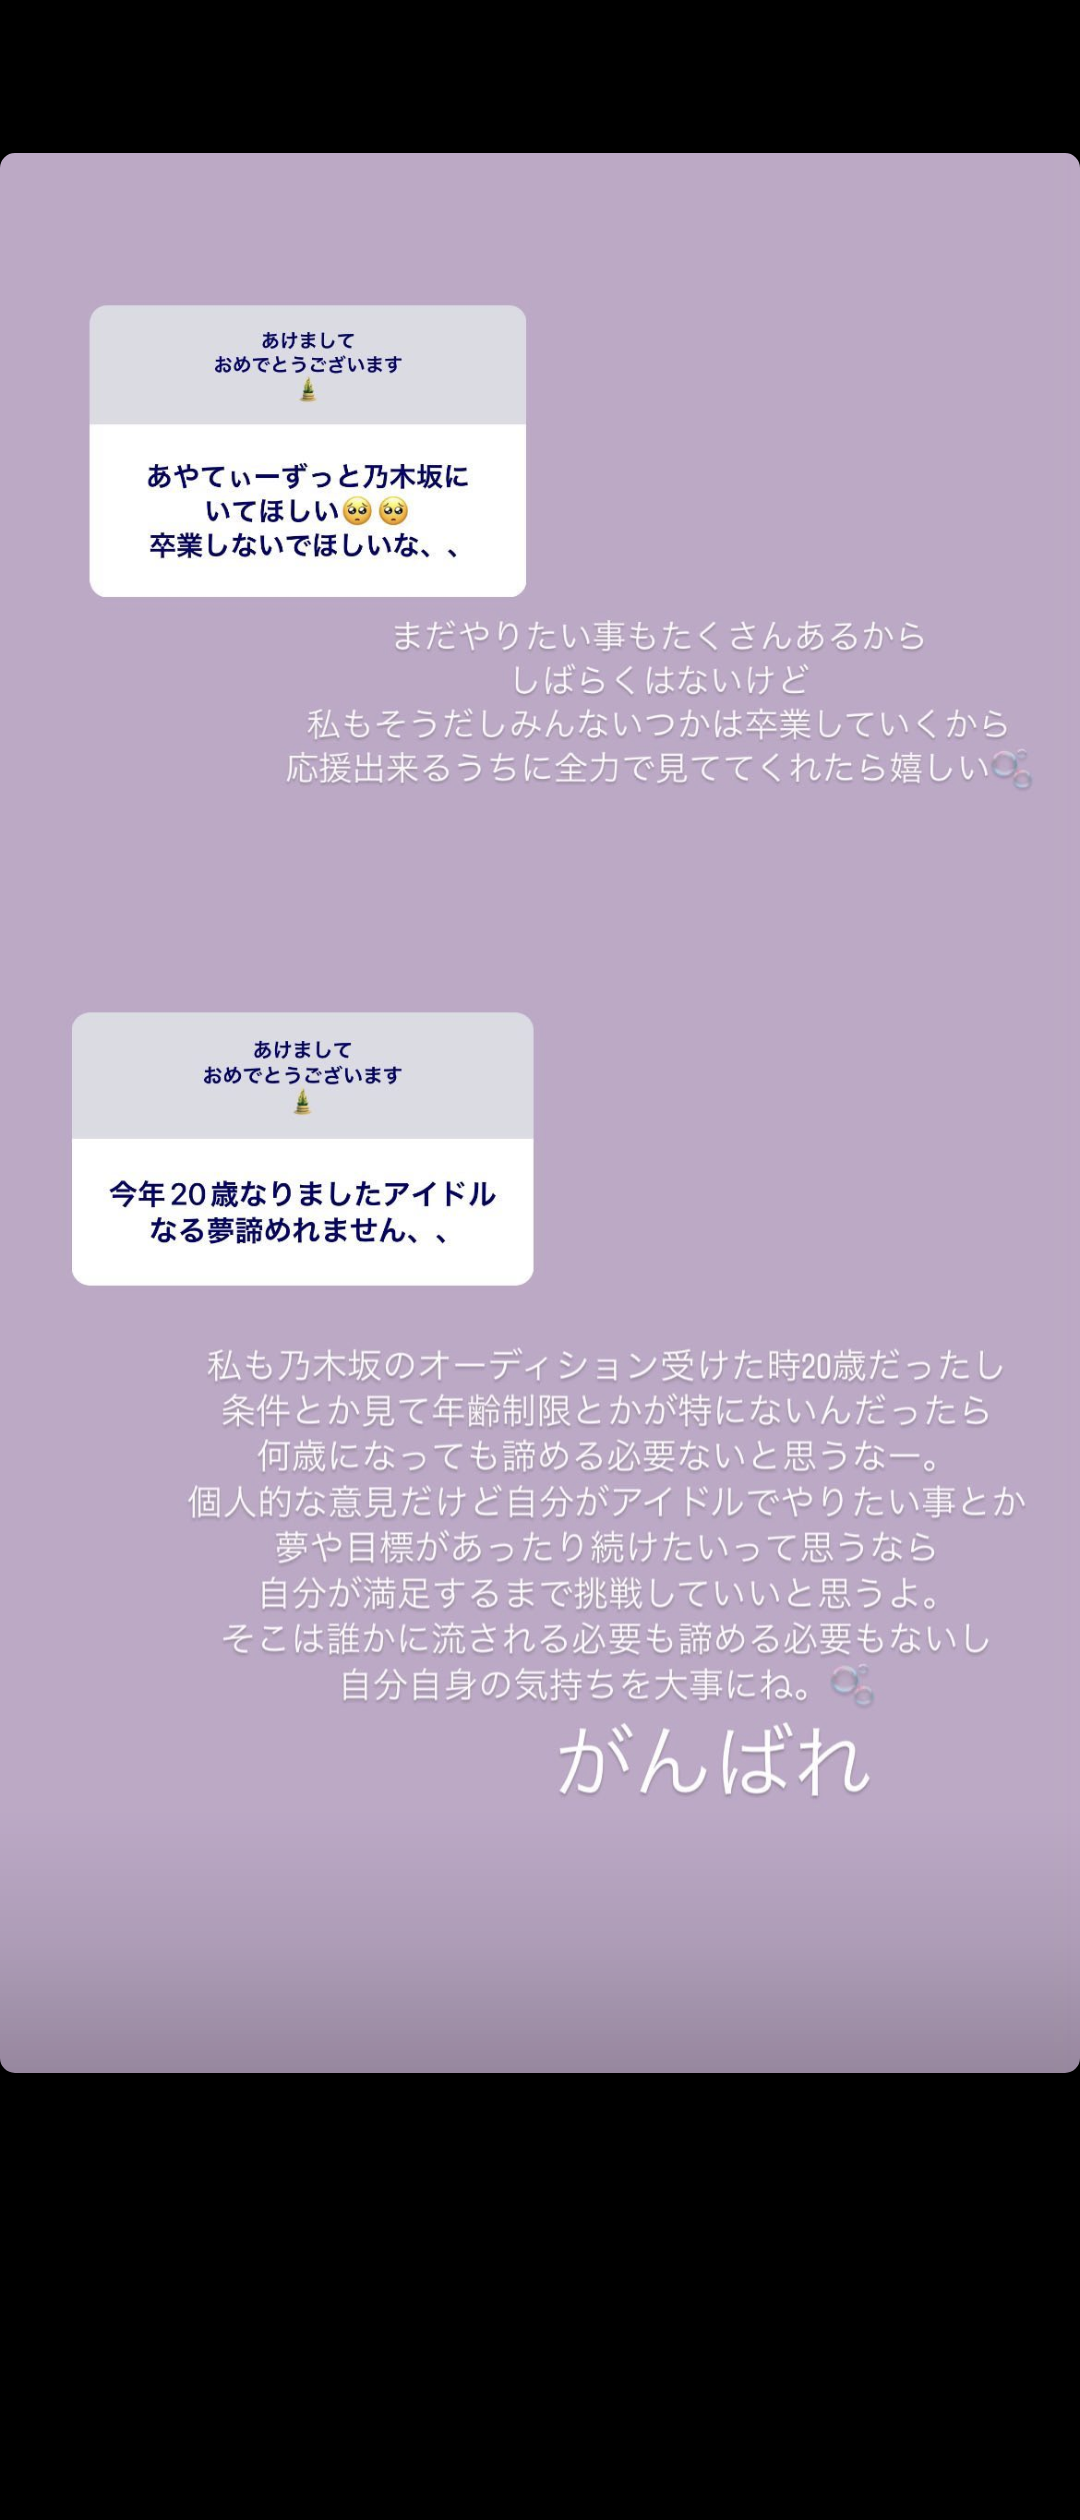 乃木坂46吉田綾乃クリスティー、卒業について「しばらくはない」